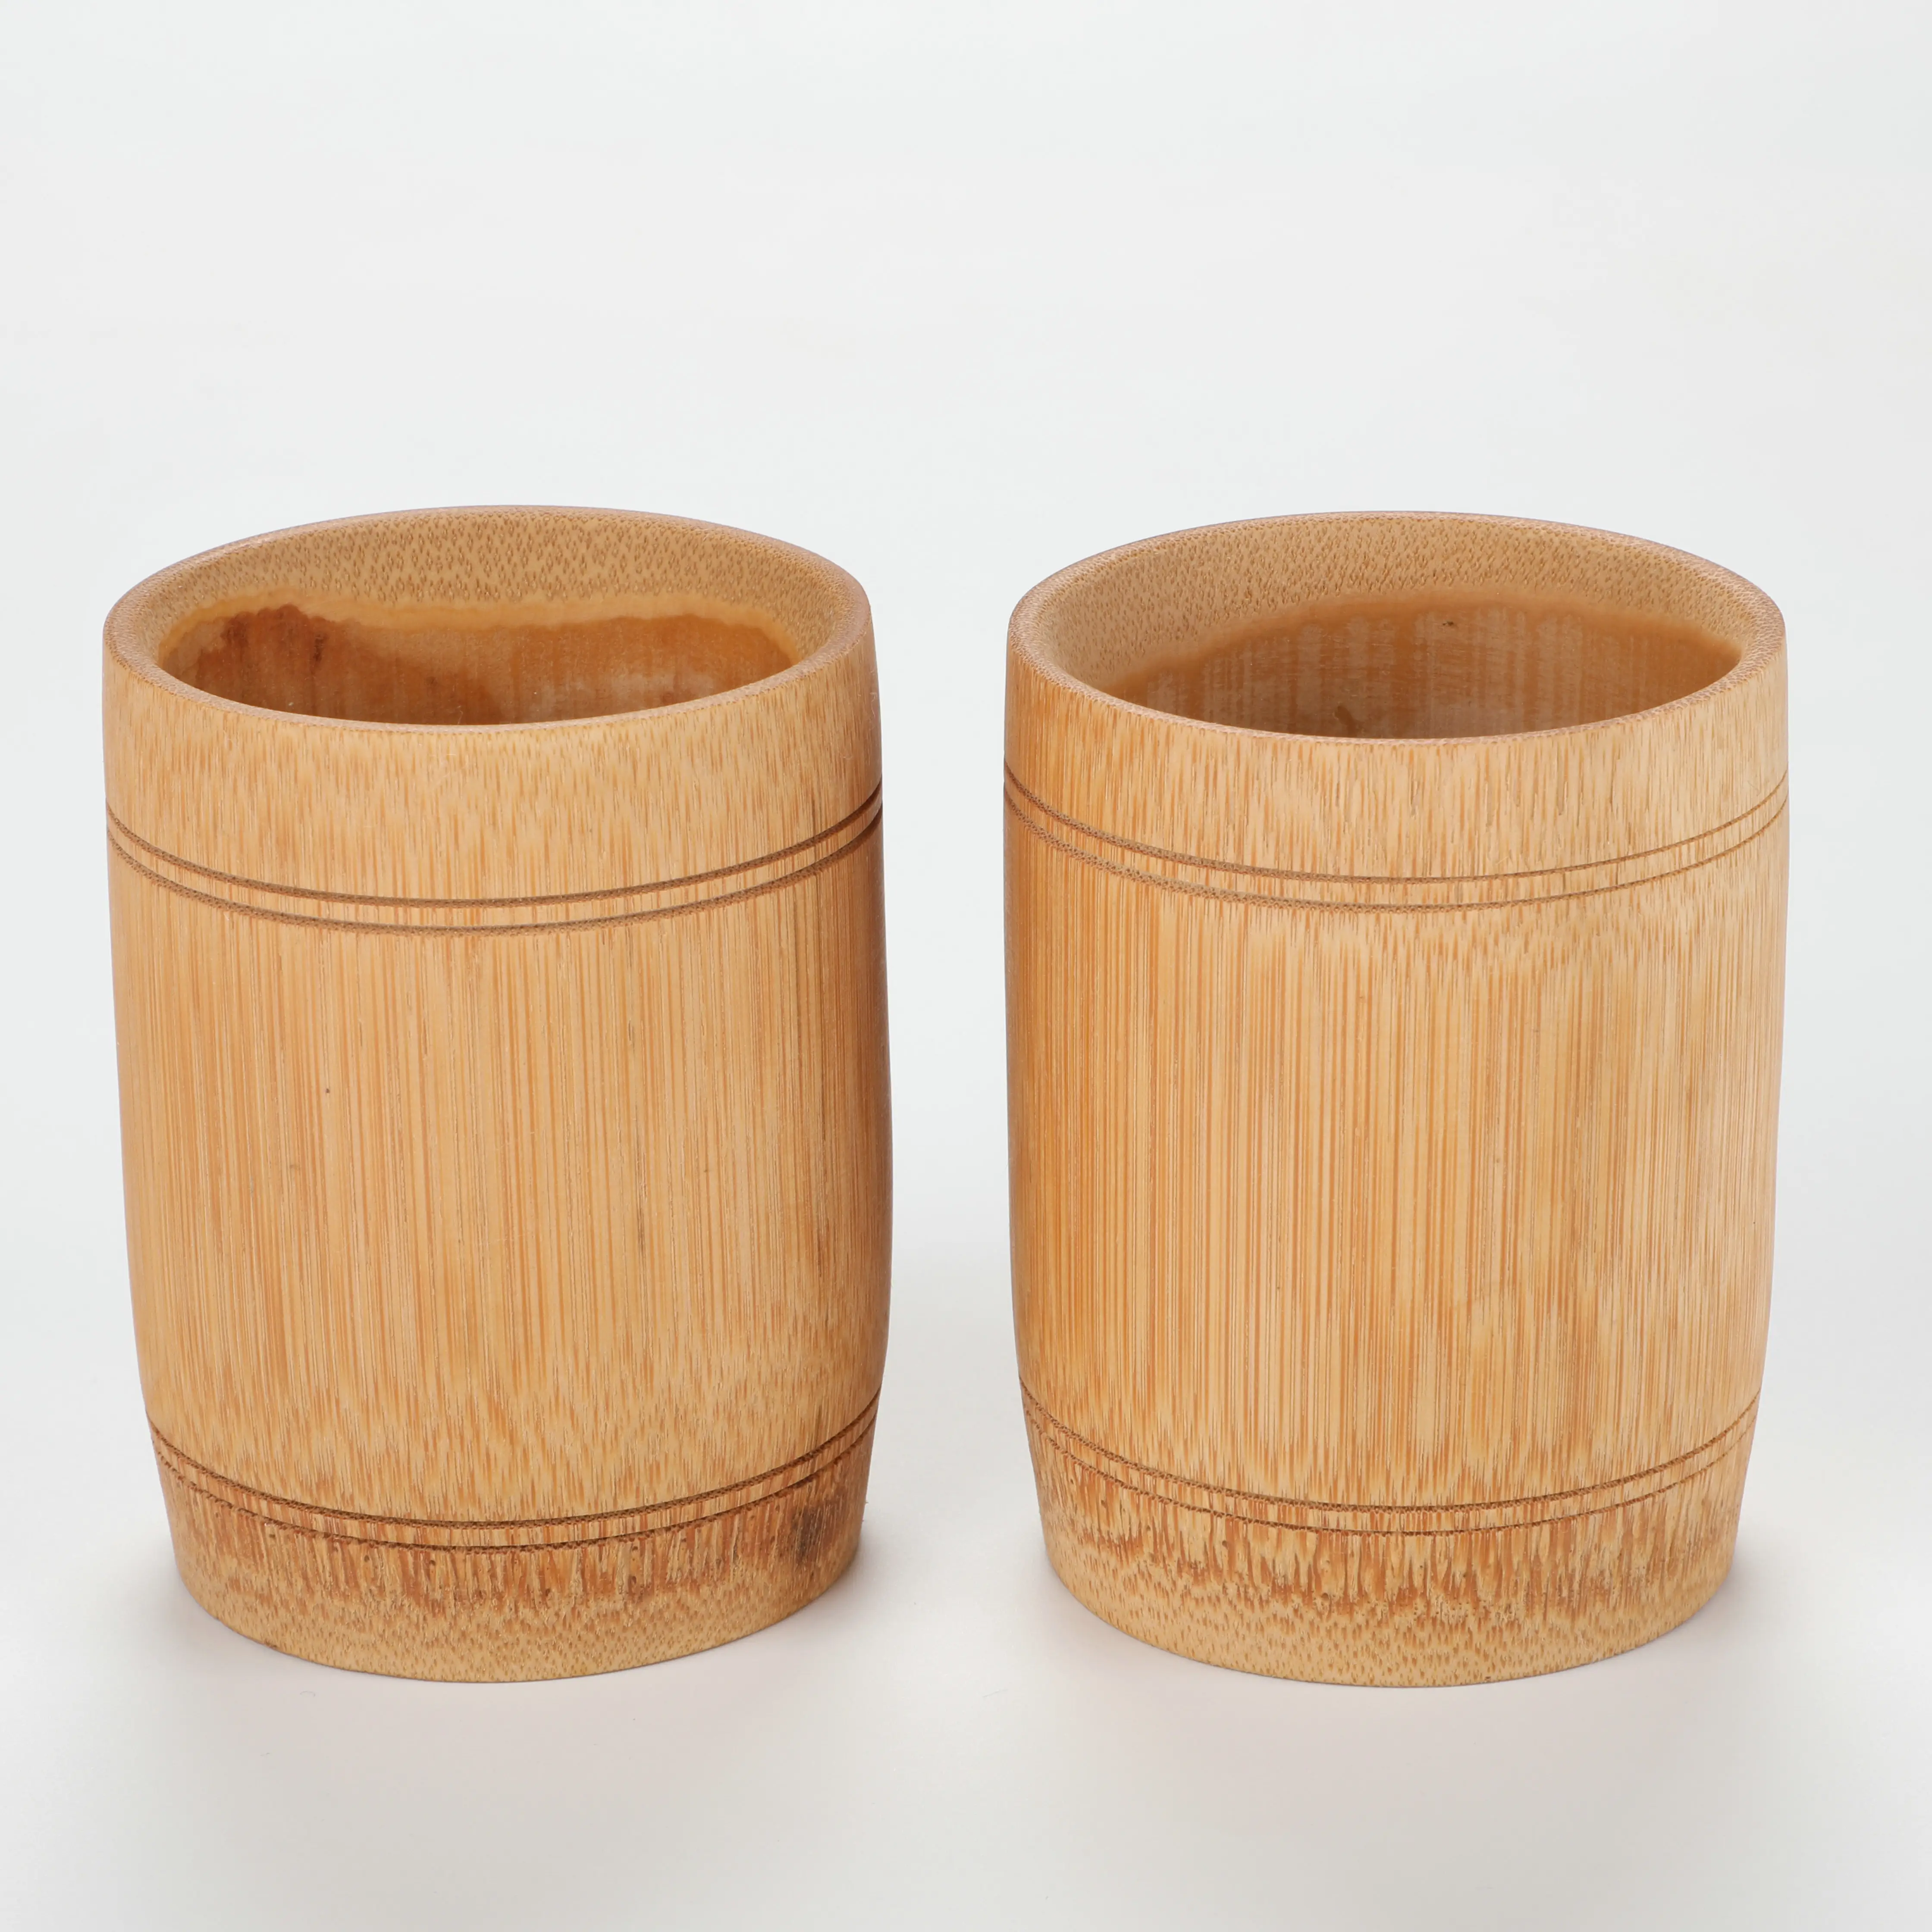 Tazas de bambú personalizadas, taza de bambú 100% Natural, ecológica, hecha a mano, logotipo personalizado, vajilla reutilizable